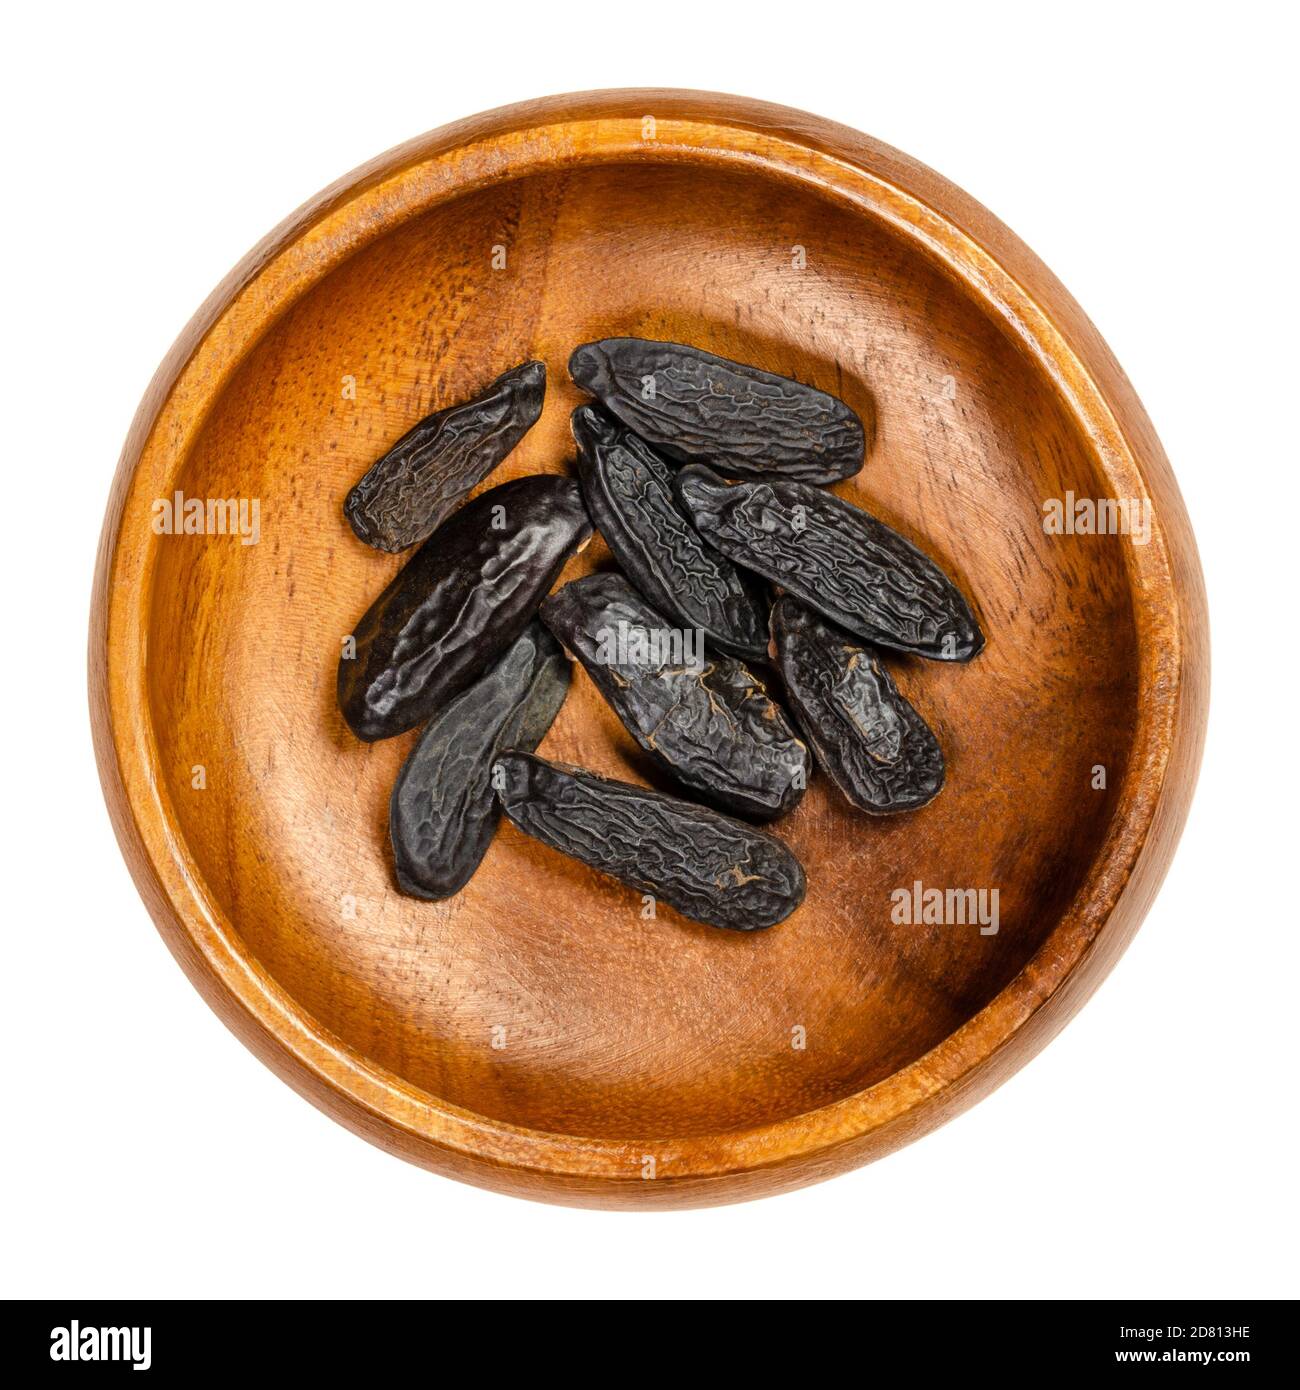 Tonkabohnen in einer Holzschüssel. Tonkin oder Tonquinbohnen, schwarze und faltige Samen des Baumes Dipteryx odorata. Natürlicher Cumarin Duft. Stockfoto